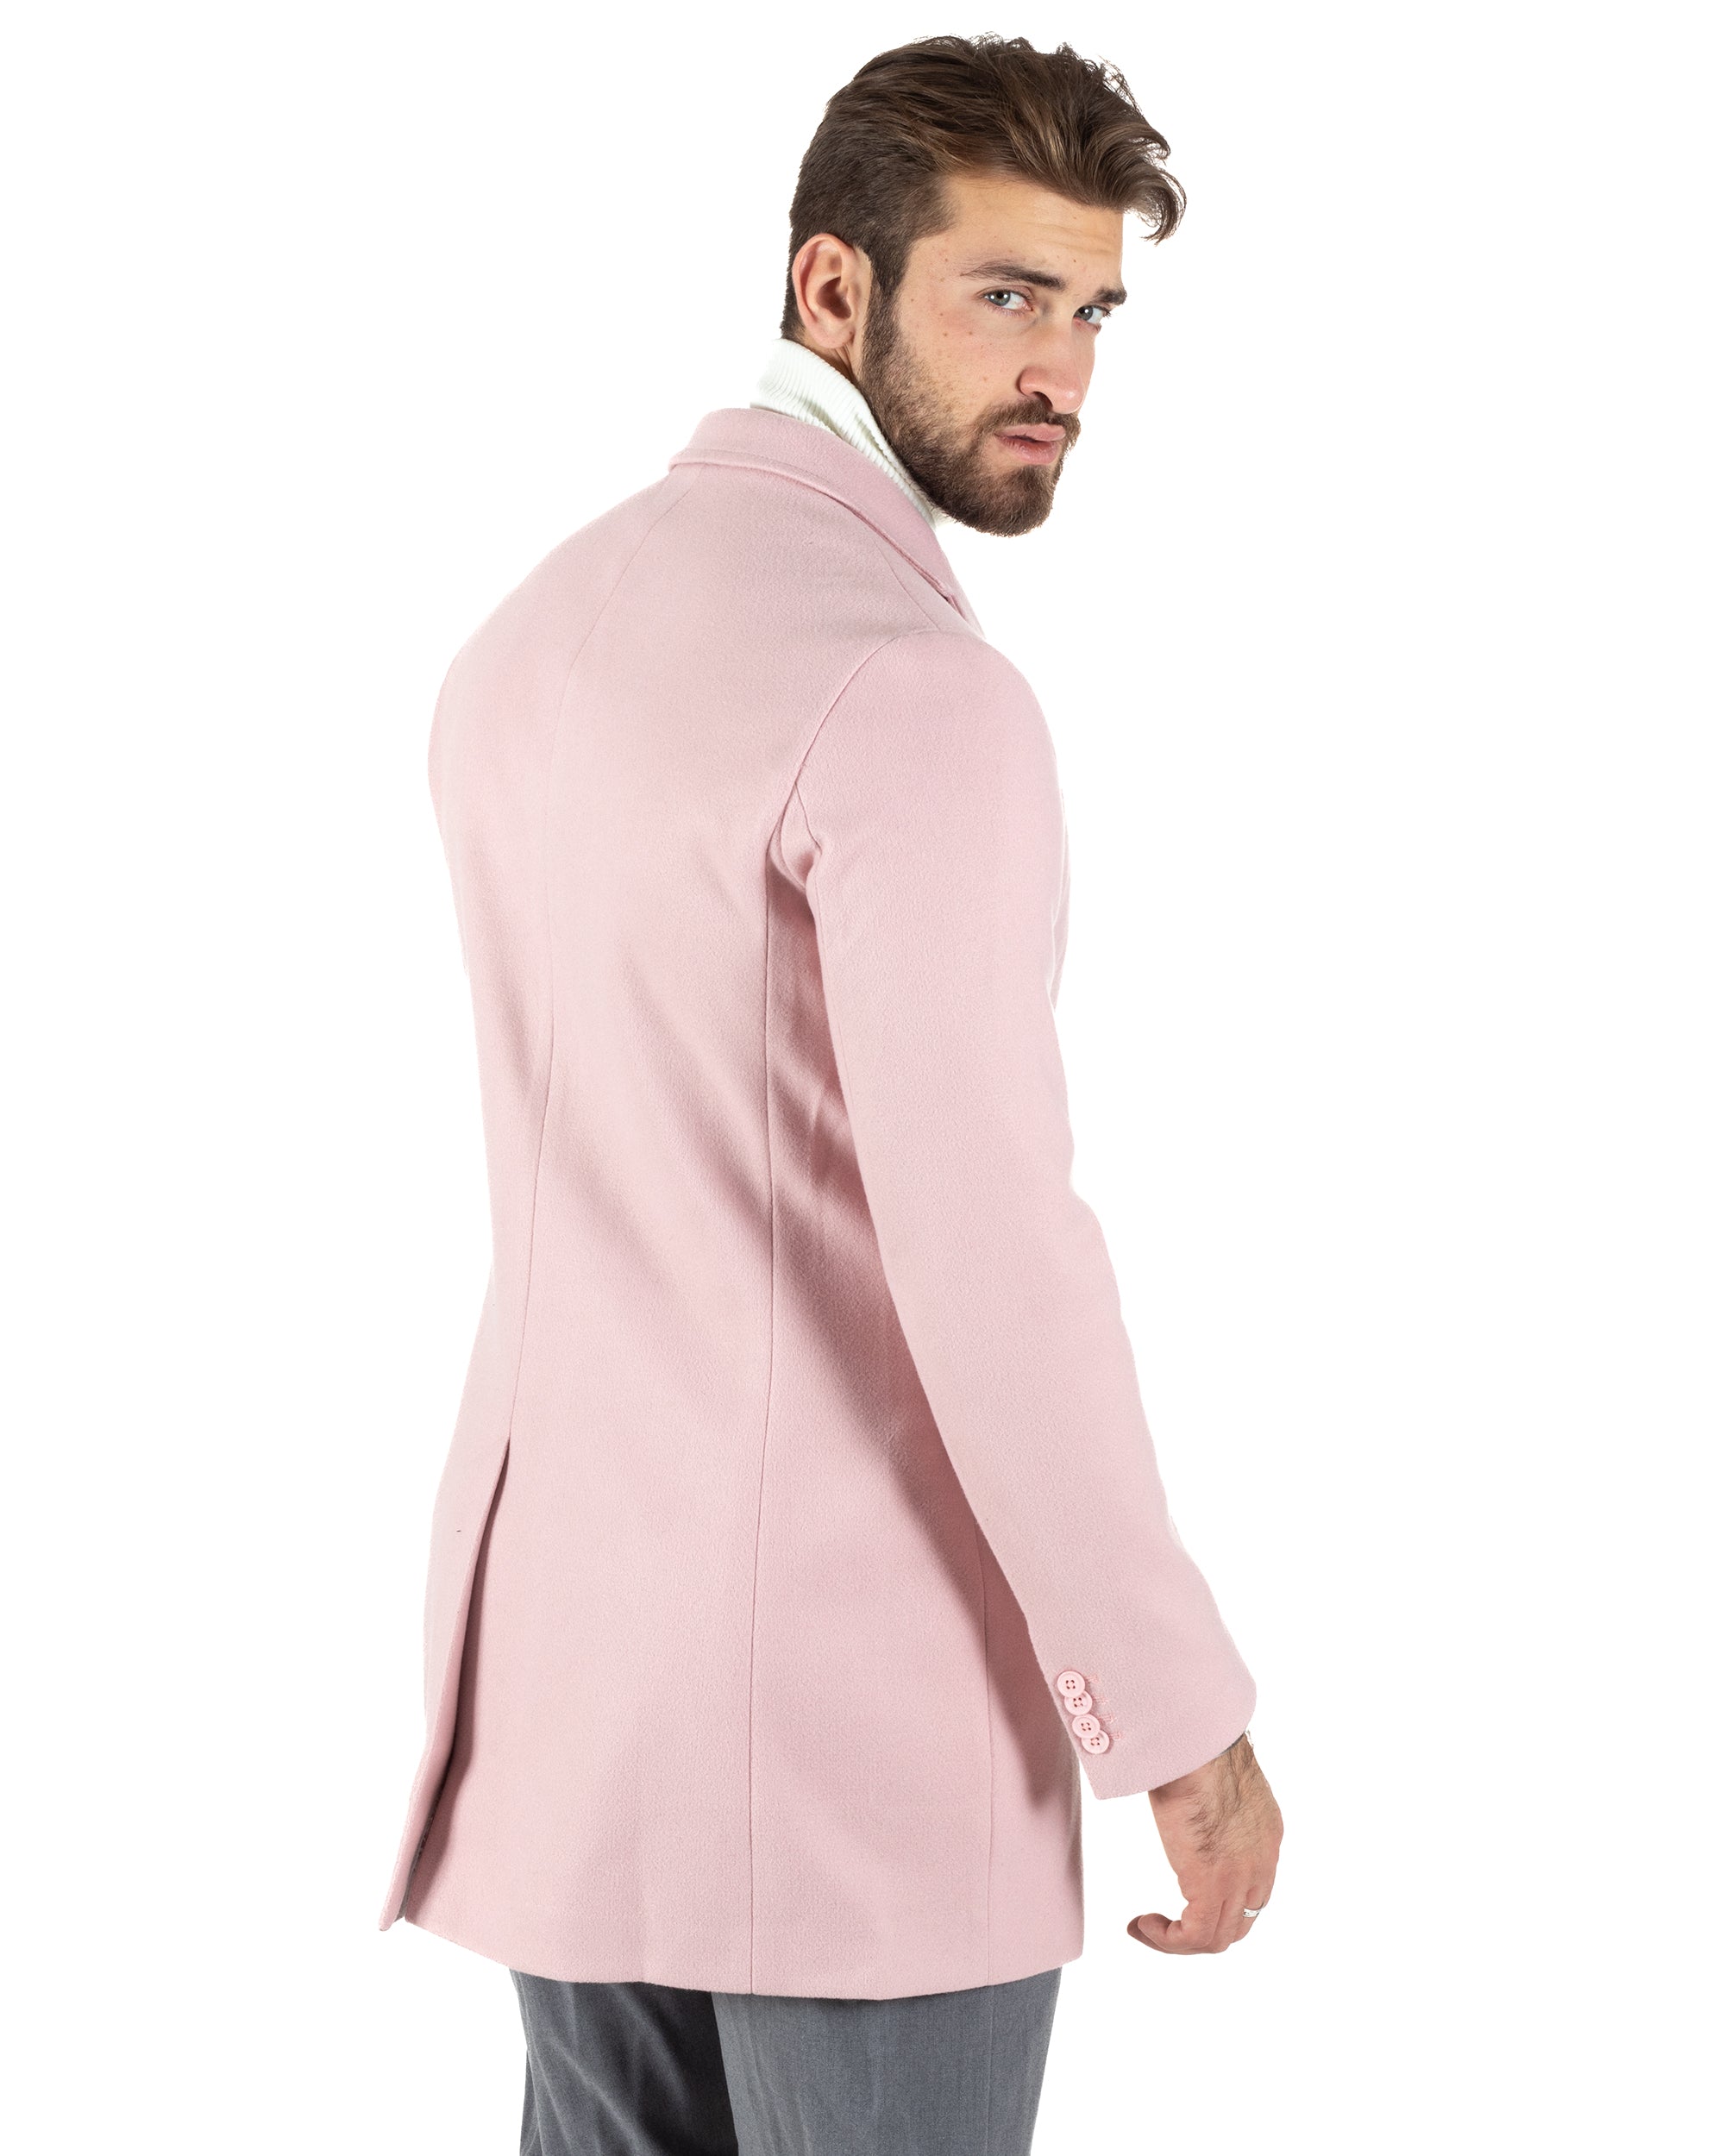 Cappotto Monopetto Uomo Giacca Colletto Reverse Giaccone Tinta Unita Rosa Baronetto Elegante GIOSAL-CO1020A